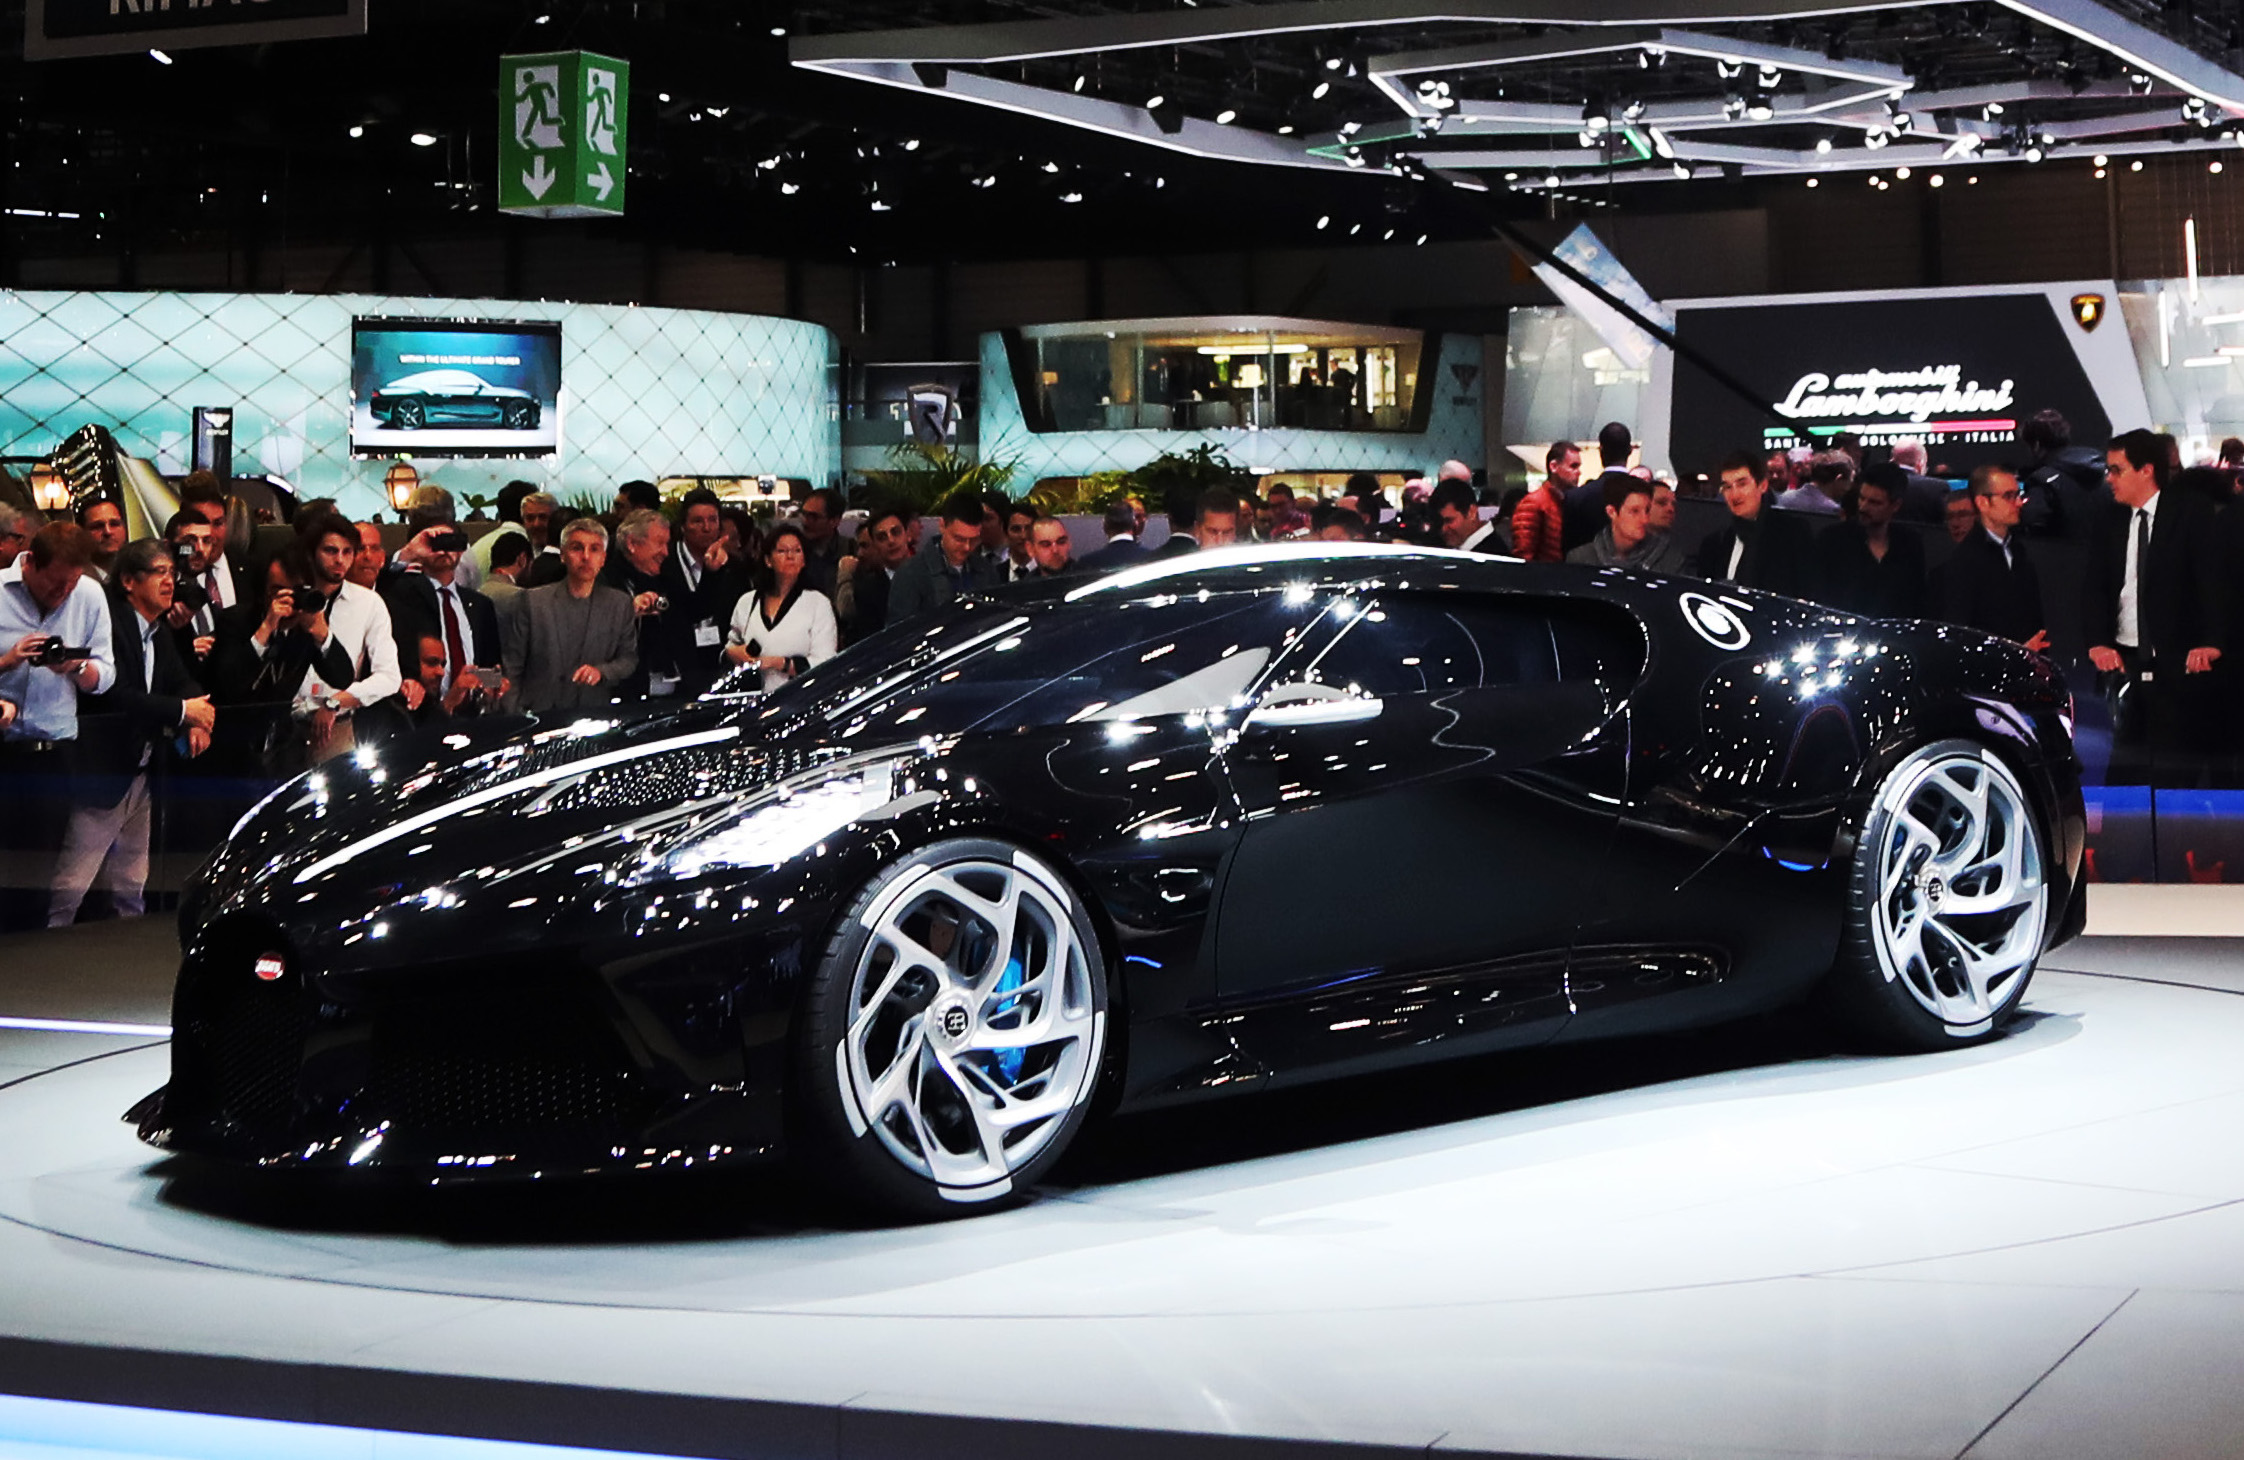 Bugatti La Voiture Noire unveiled, most expensive car ever